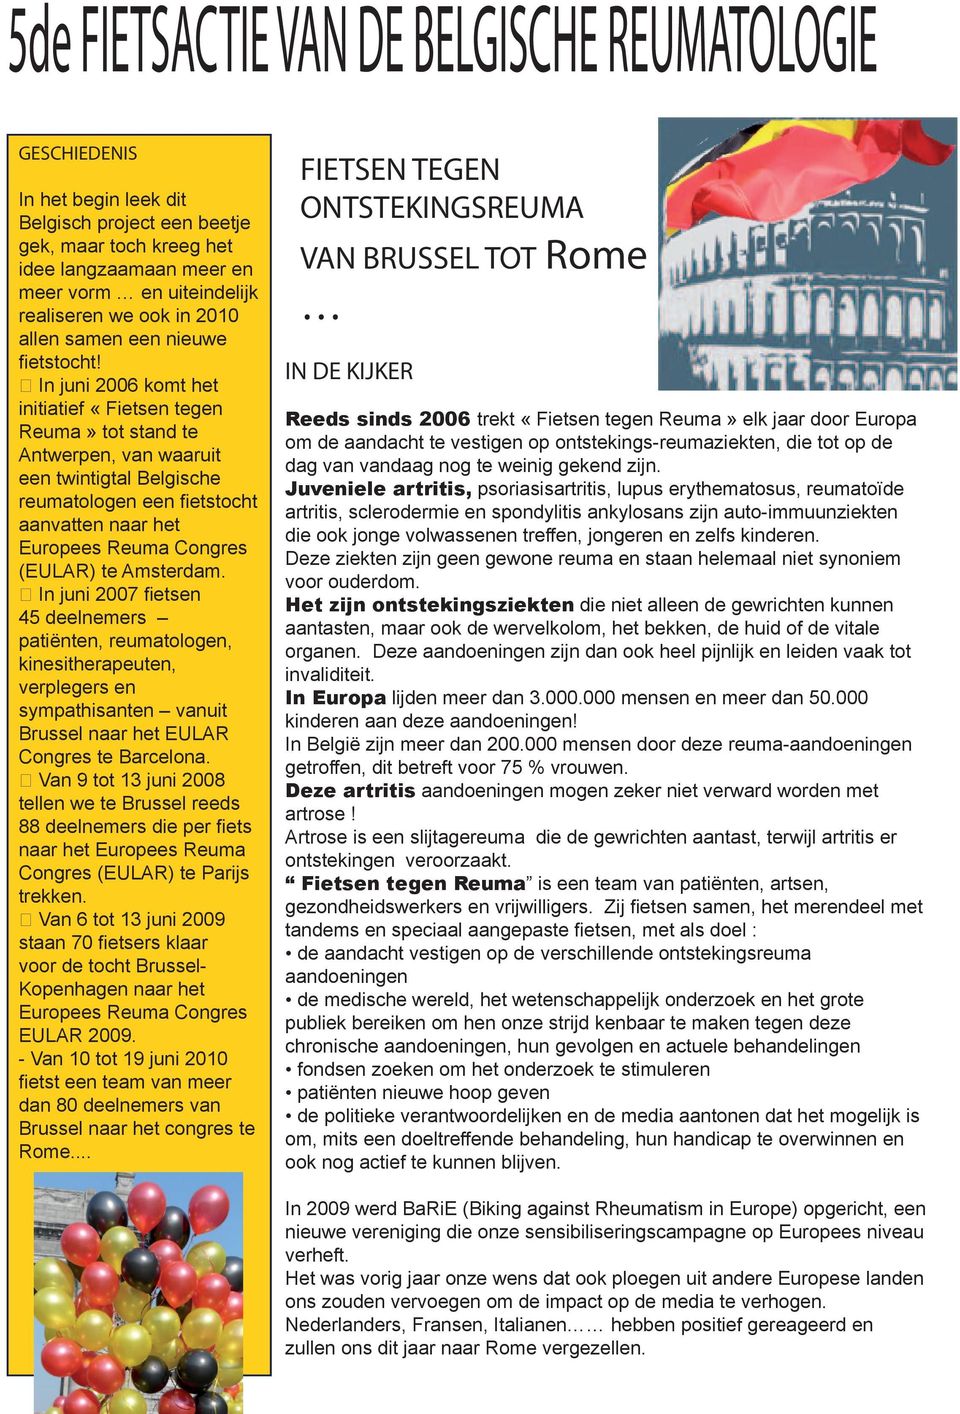 In juni 2006 komt het initiatief «Fietsen tegen Reuma» tot stand te Antwerpen, van waaruit een twintigtal Belgische reumatologen een fi etstocht aanvatten naar het Europees Reuma Congres (EULAR) te